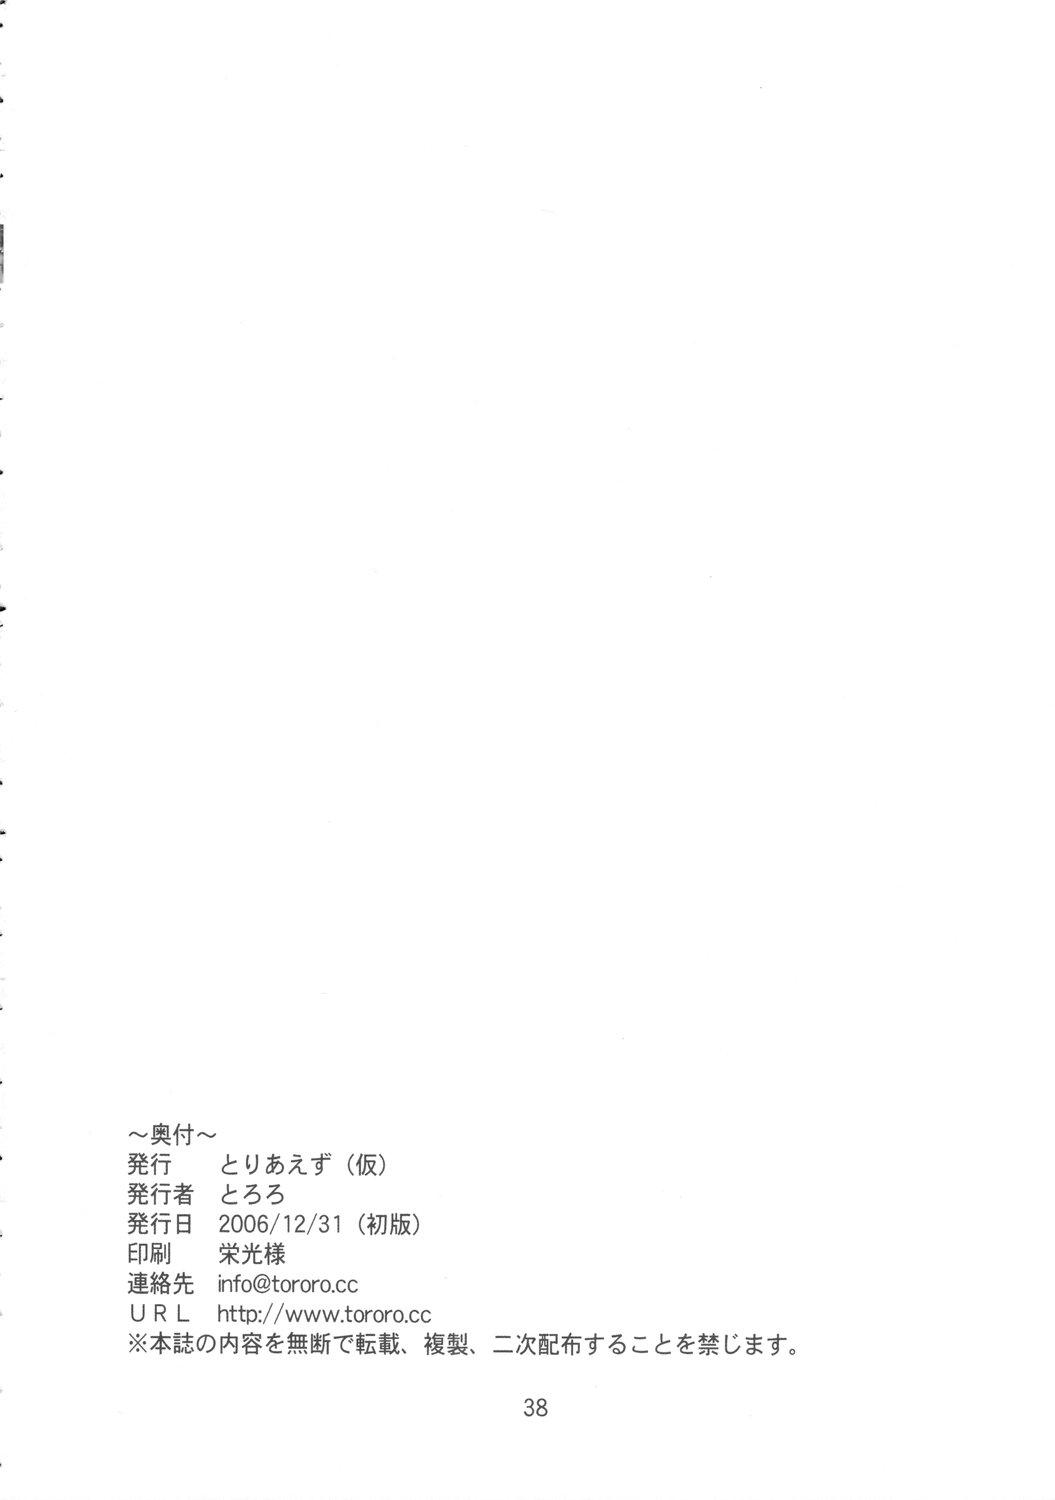 Sucking Yume no Kakera - Higurashi no naku koro ni Hairy - Page 37